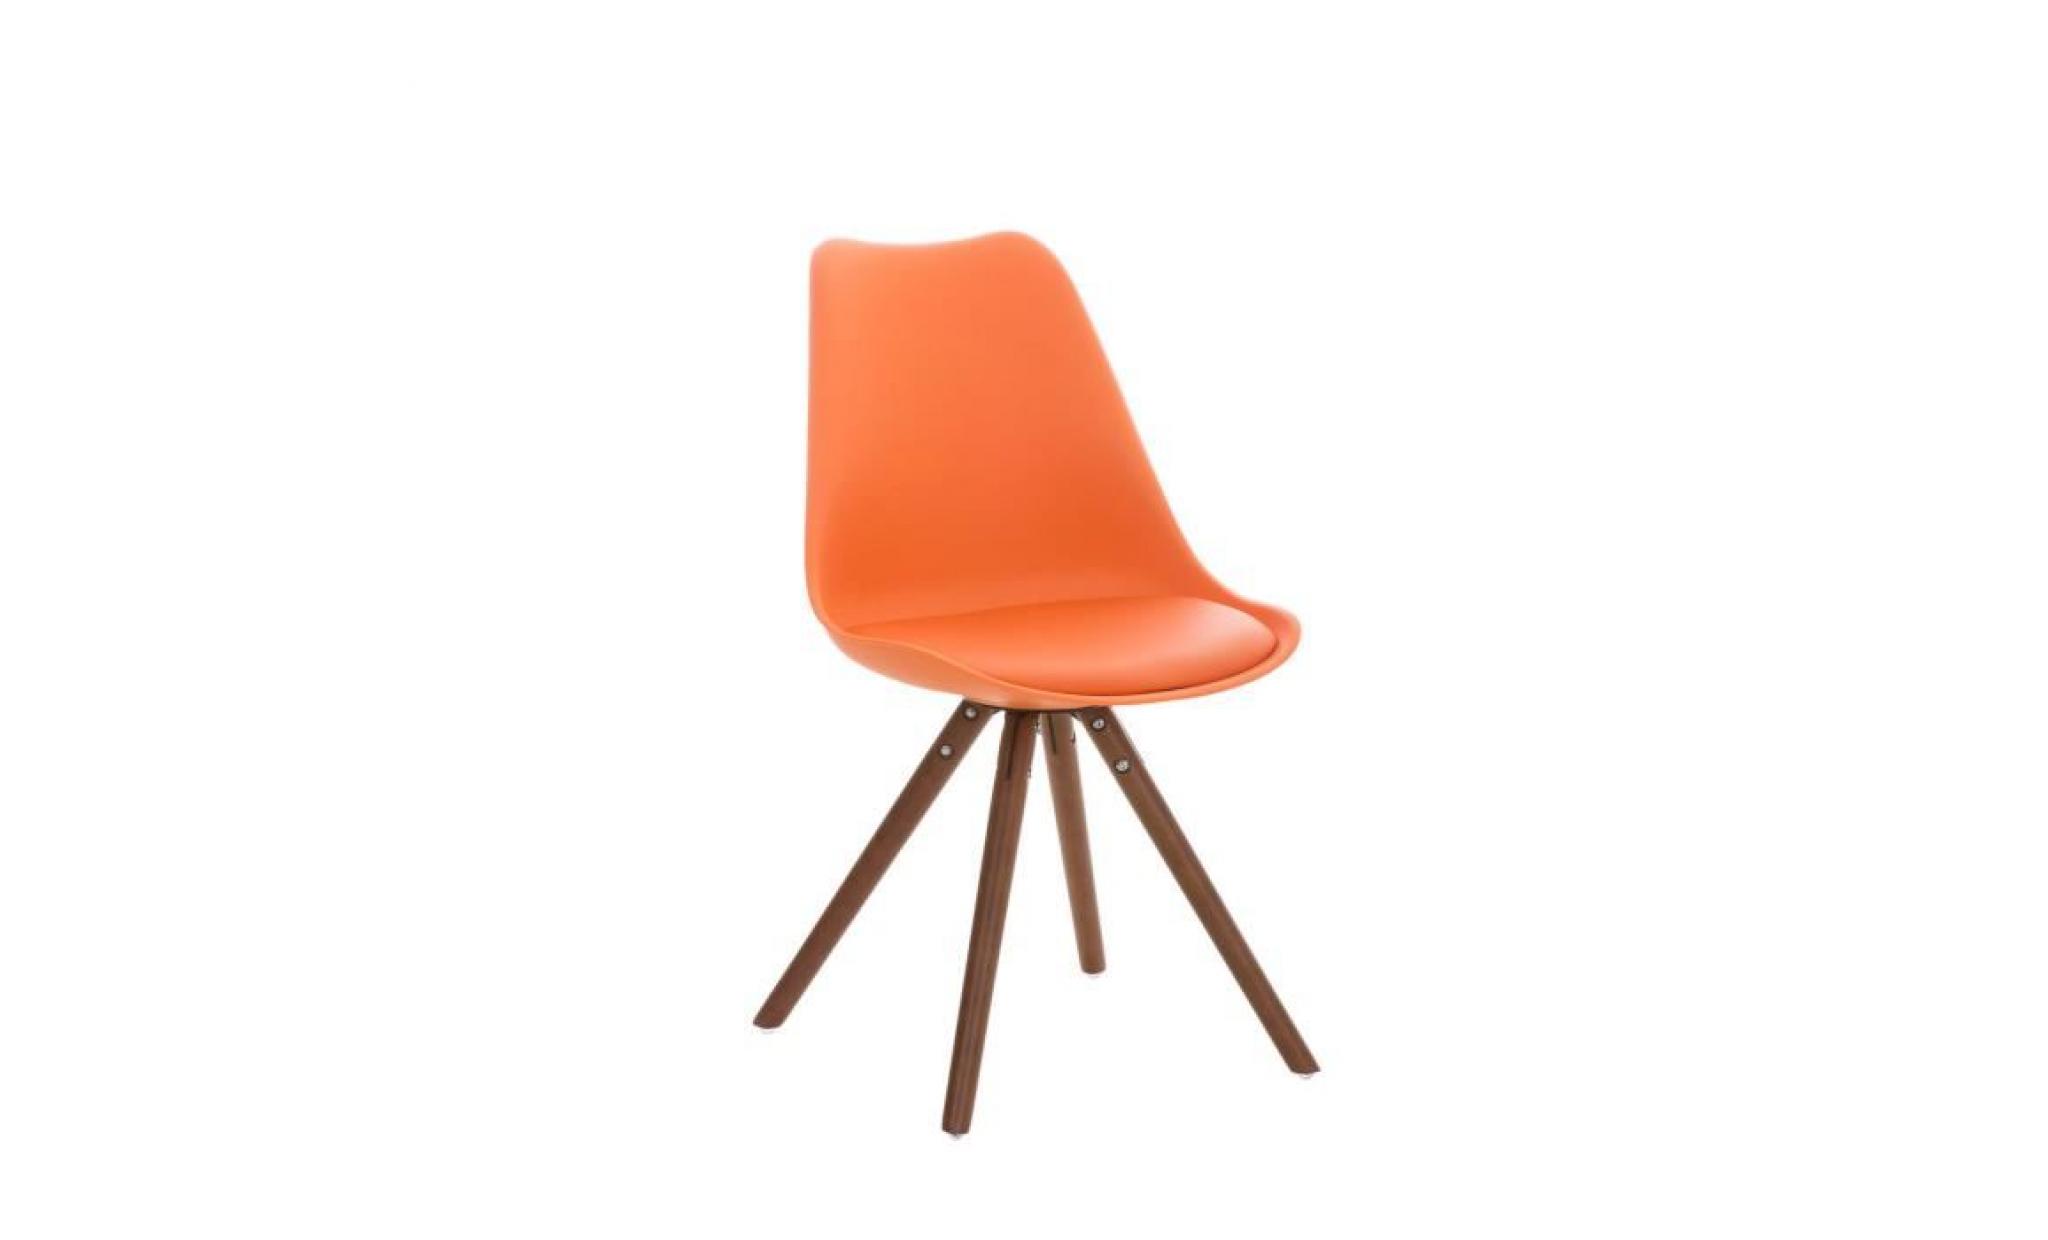 clp chaise de visiteurs de design rétro pegleg avec piétement en bois noix, mélange de matériaux en plastique, cuir synthétique e...